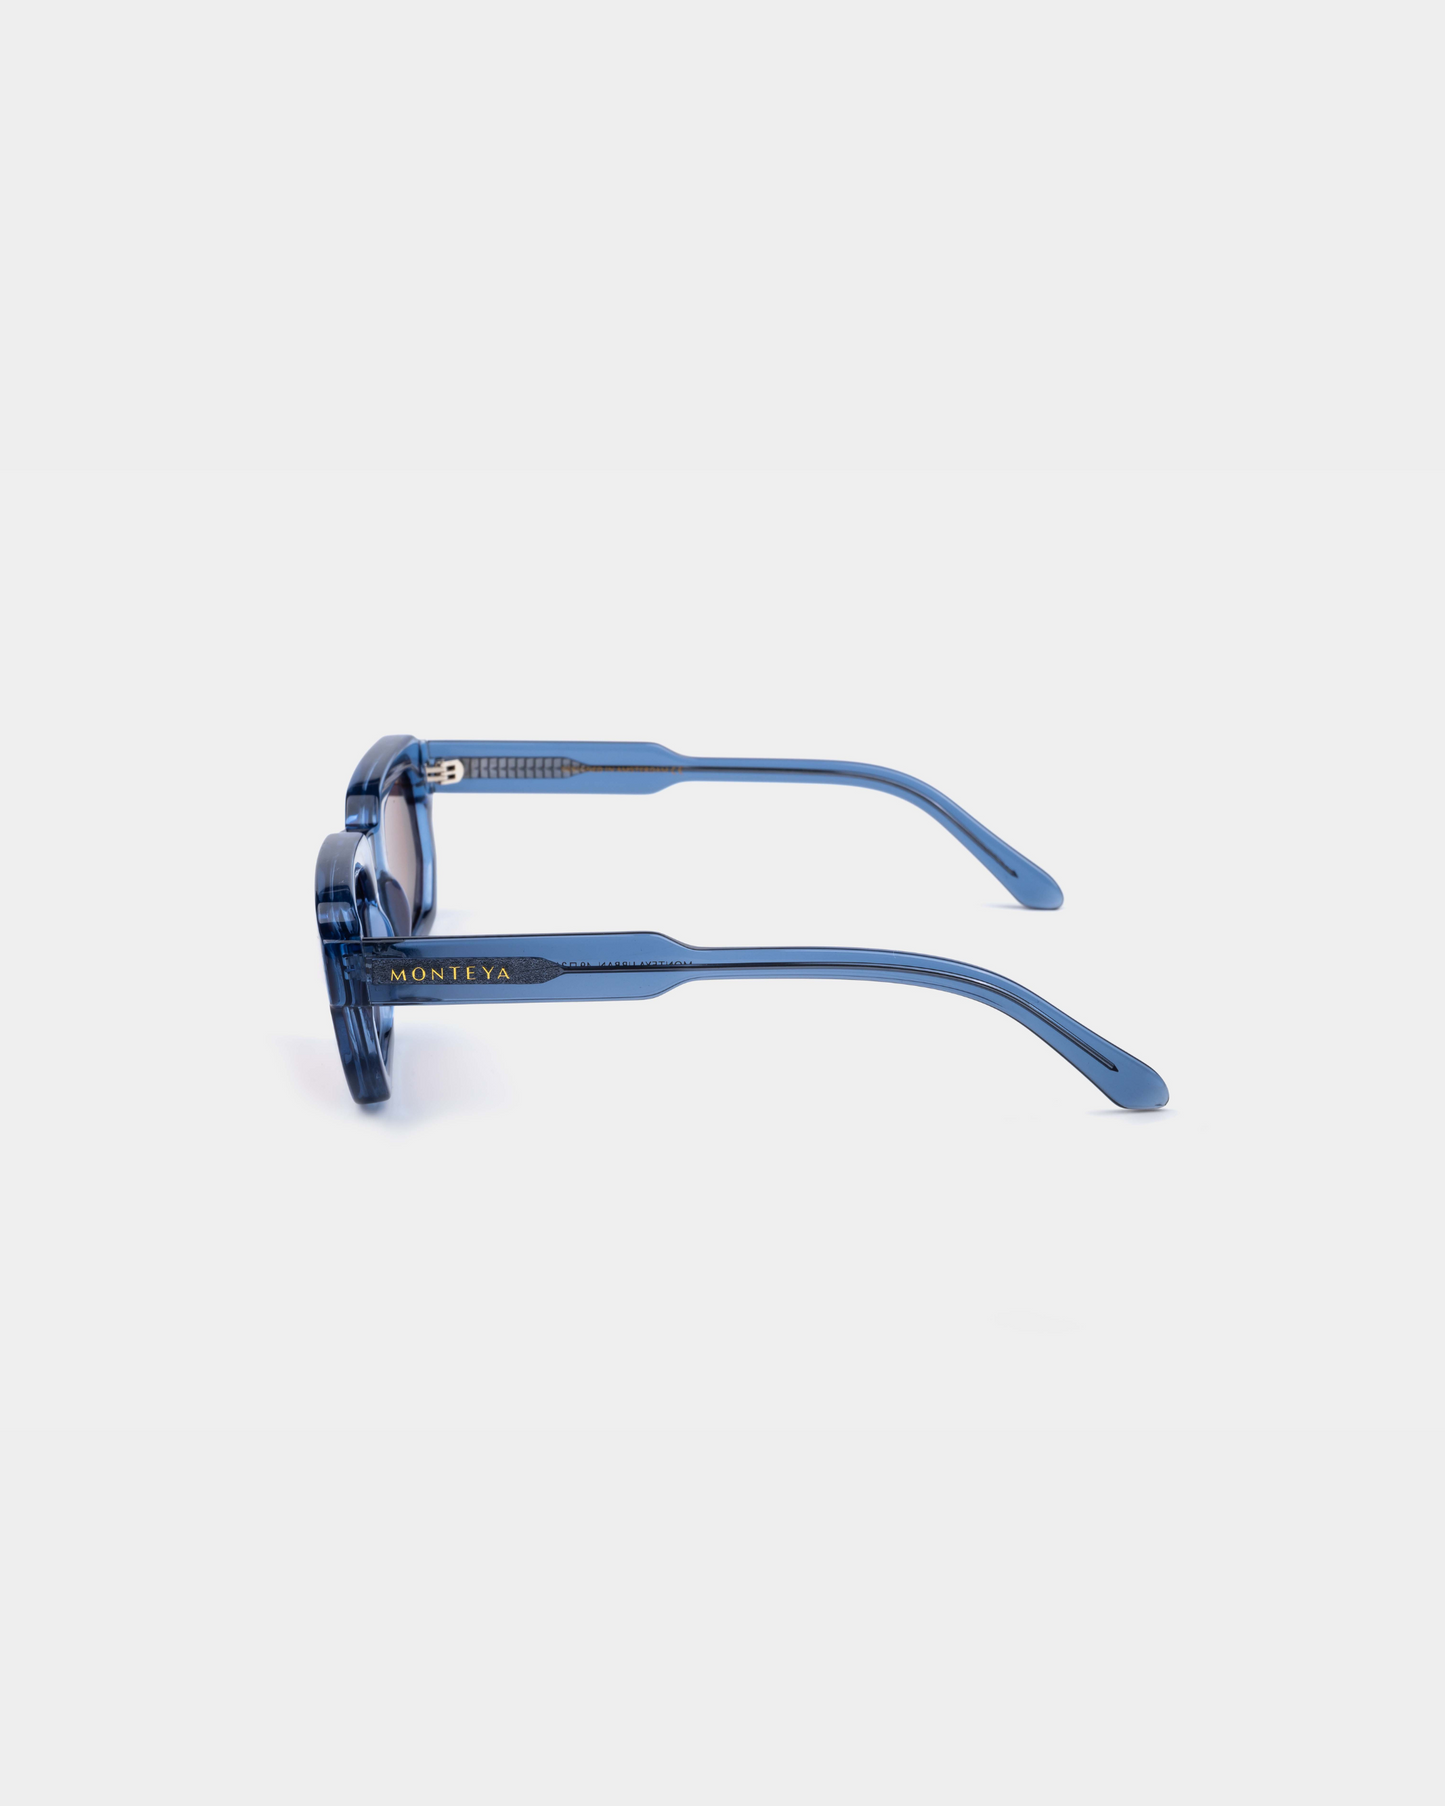 MONTEYA Urban - Lagoon - Acetate Frame - TAC Polarized Lenses - High End Eyewear - 03